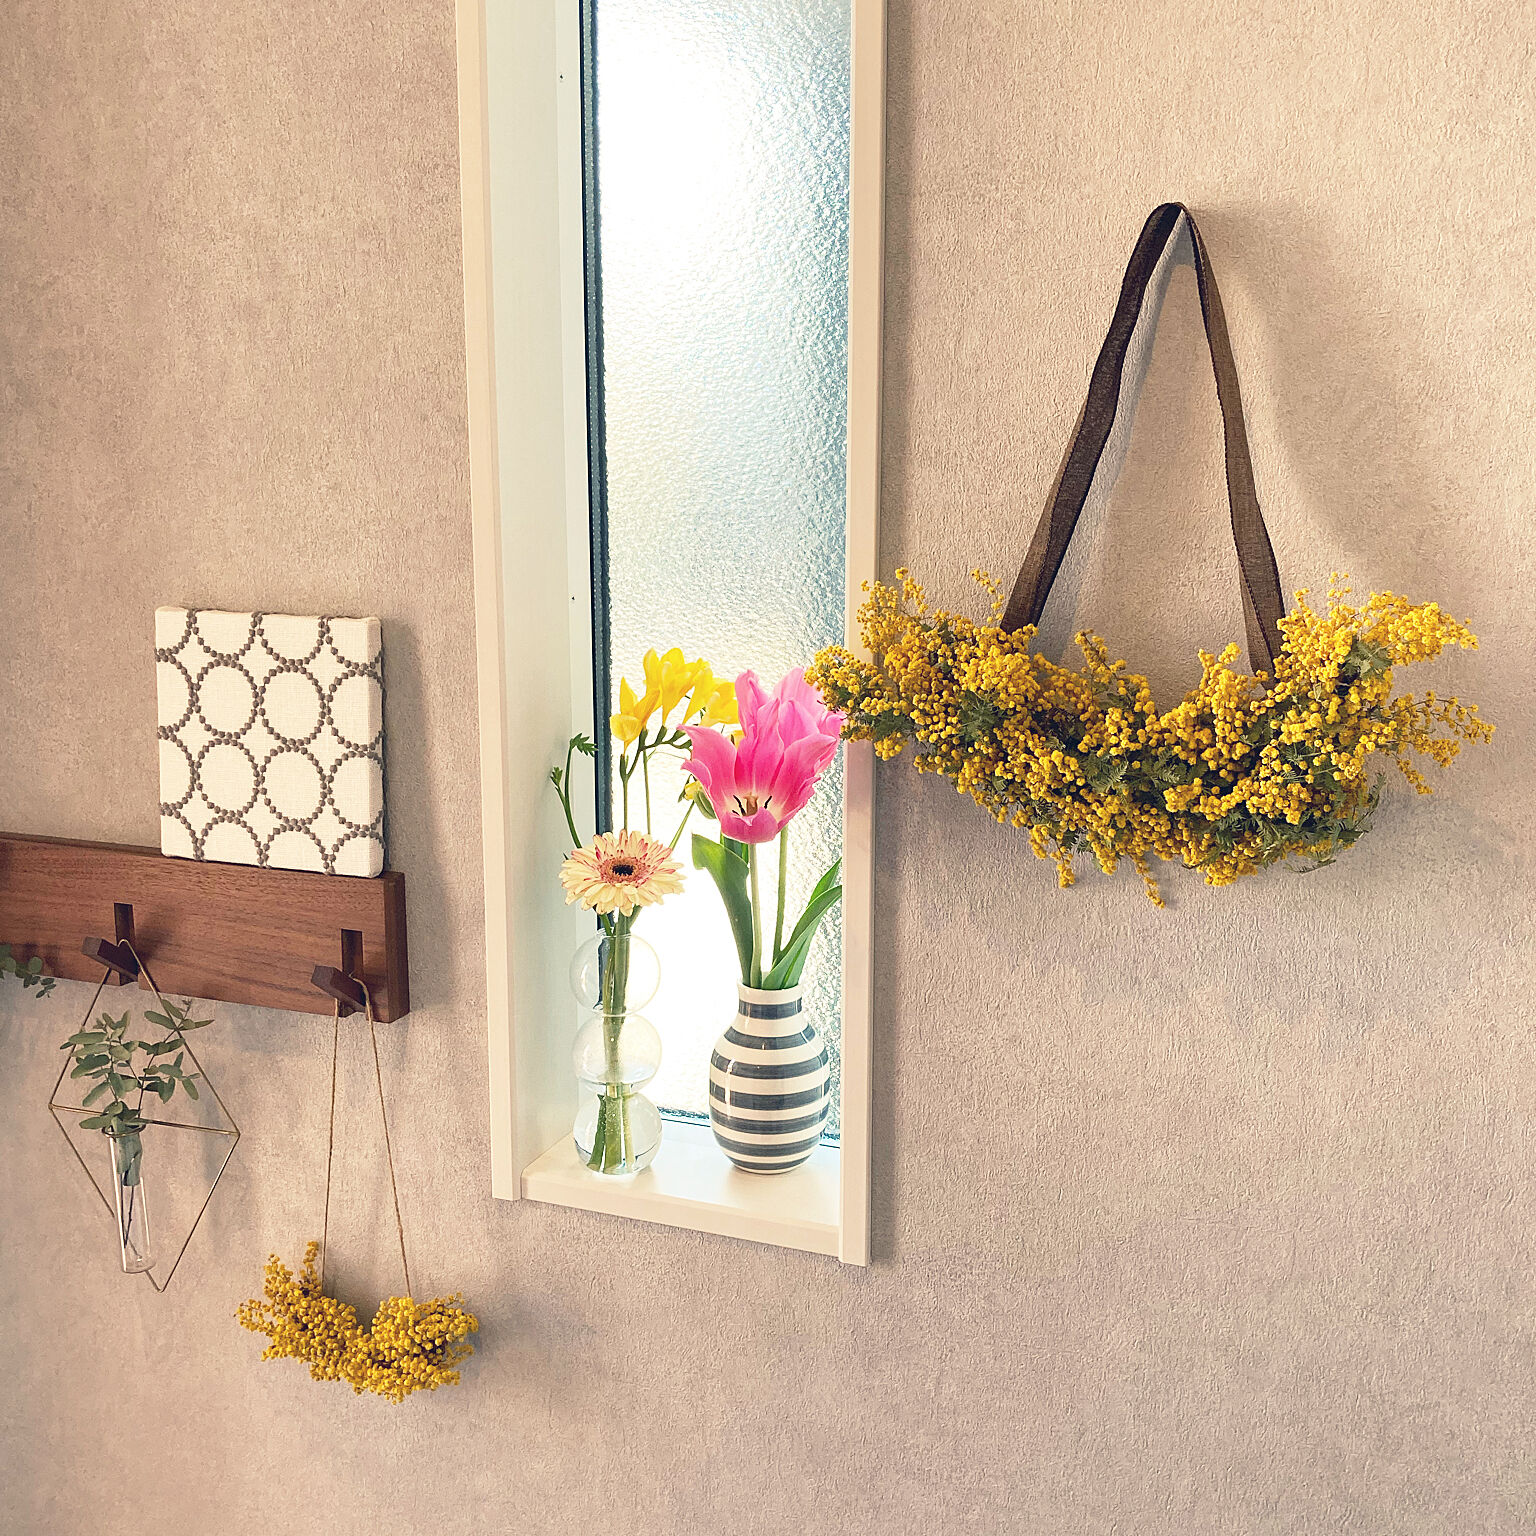 季節感を取り入れて心はずむ暮らしを 春のお花を飾っている実例10選 Roomclip Mag 暮らしとインテリアのwebマガジン